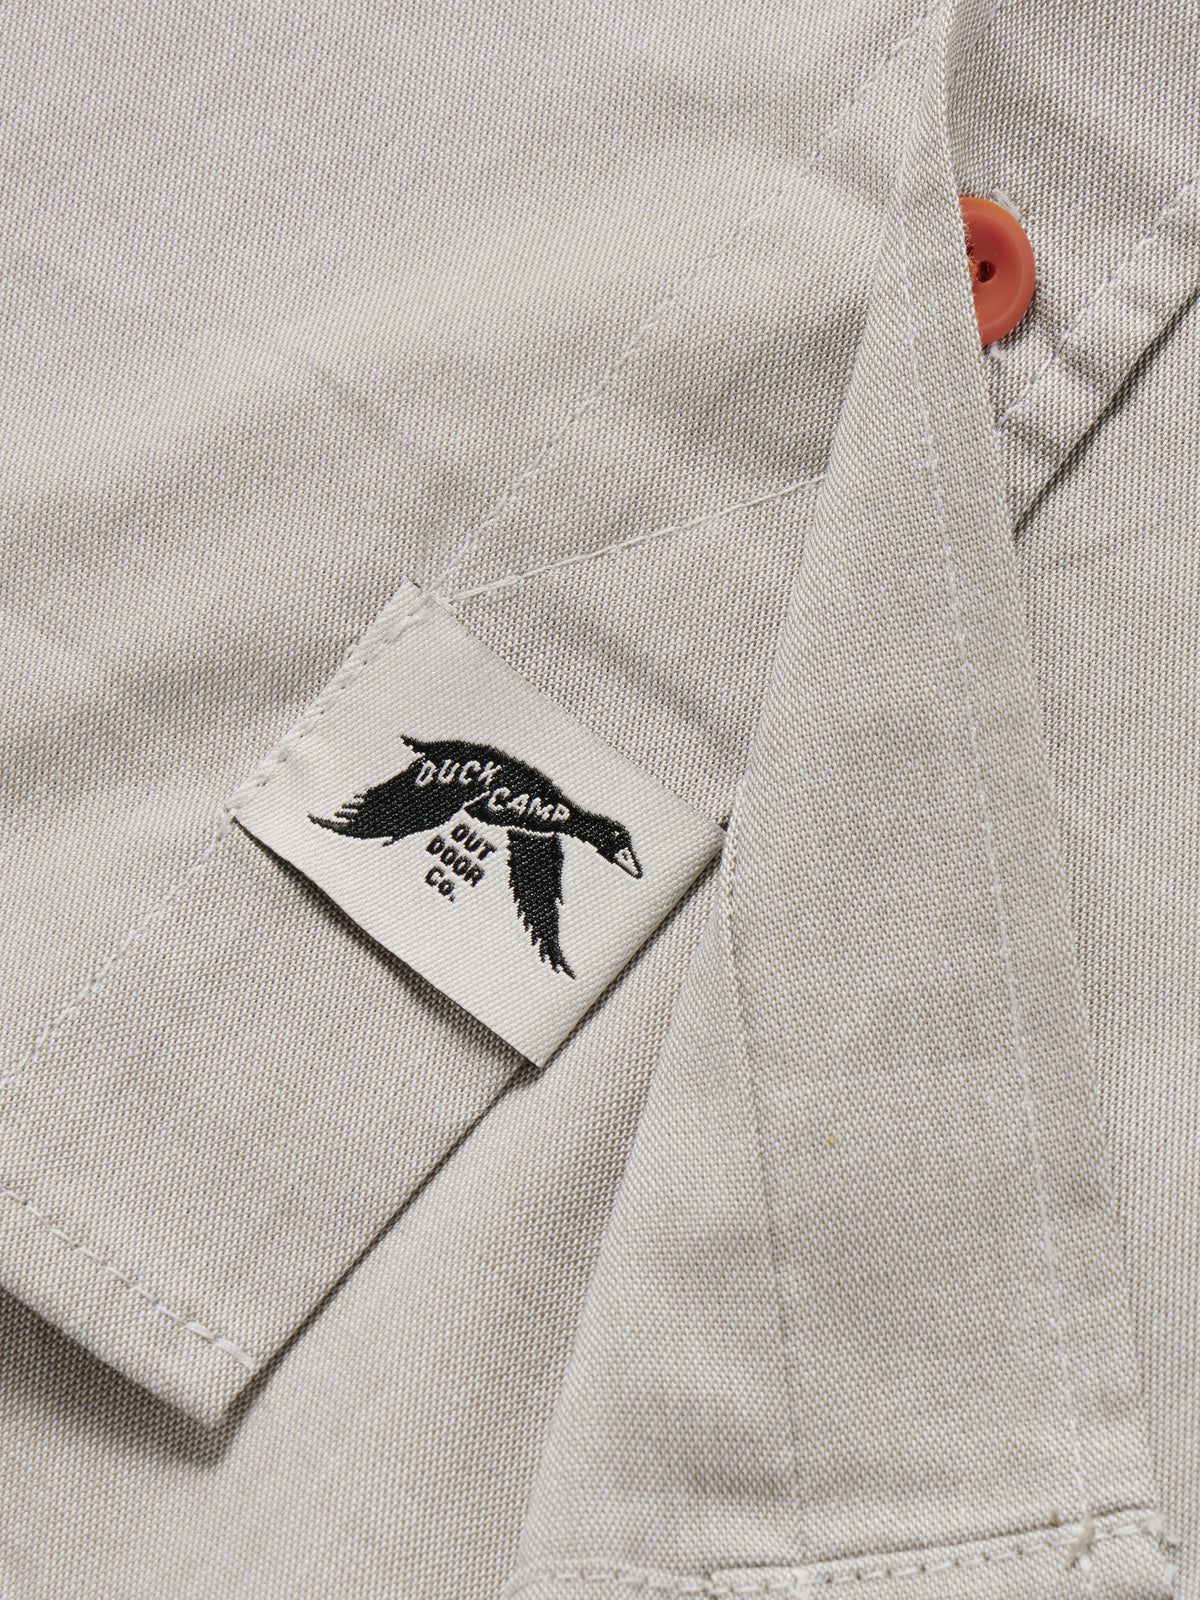 Outfitter Shirt - Sagebrush – Duck Camp